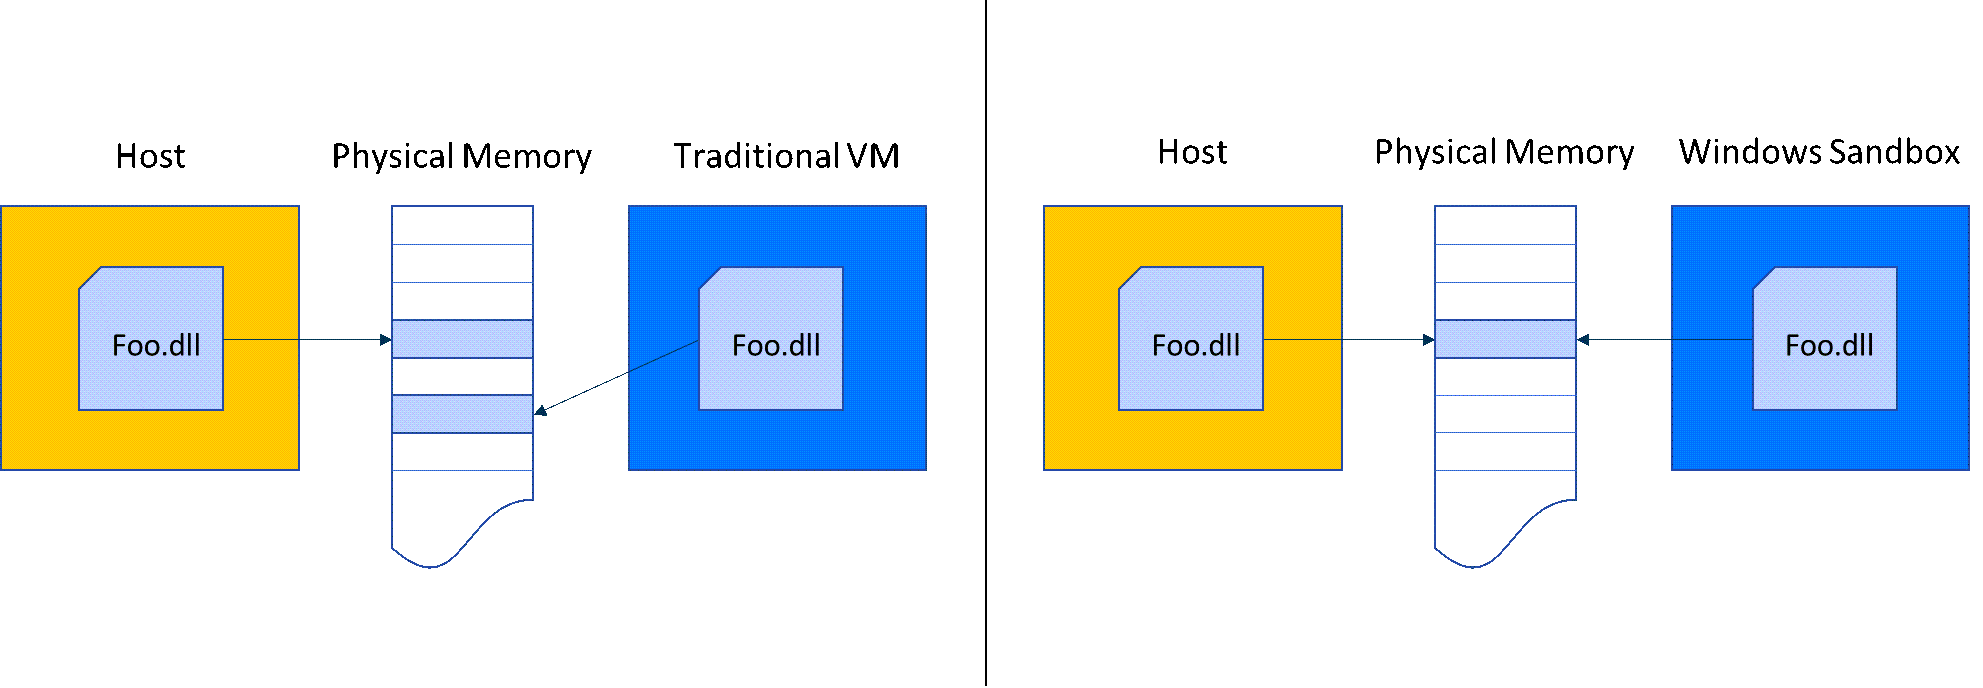 图表比较了Windows 沙盒与传统 VM 的内存占用量。